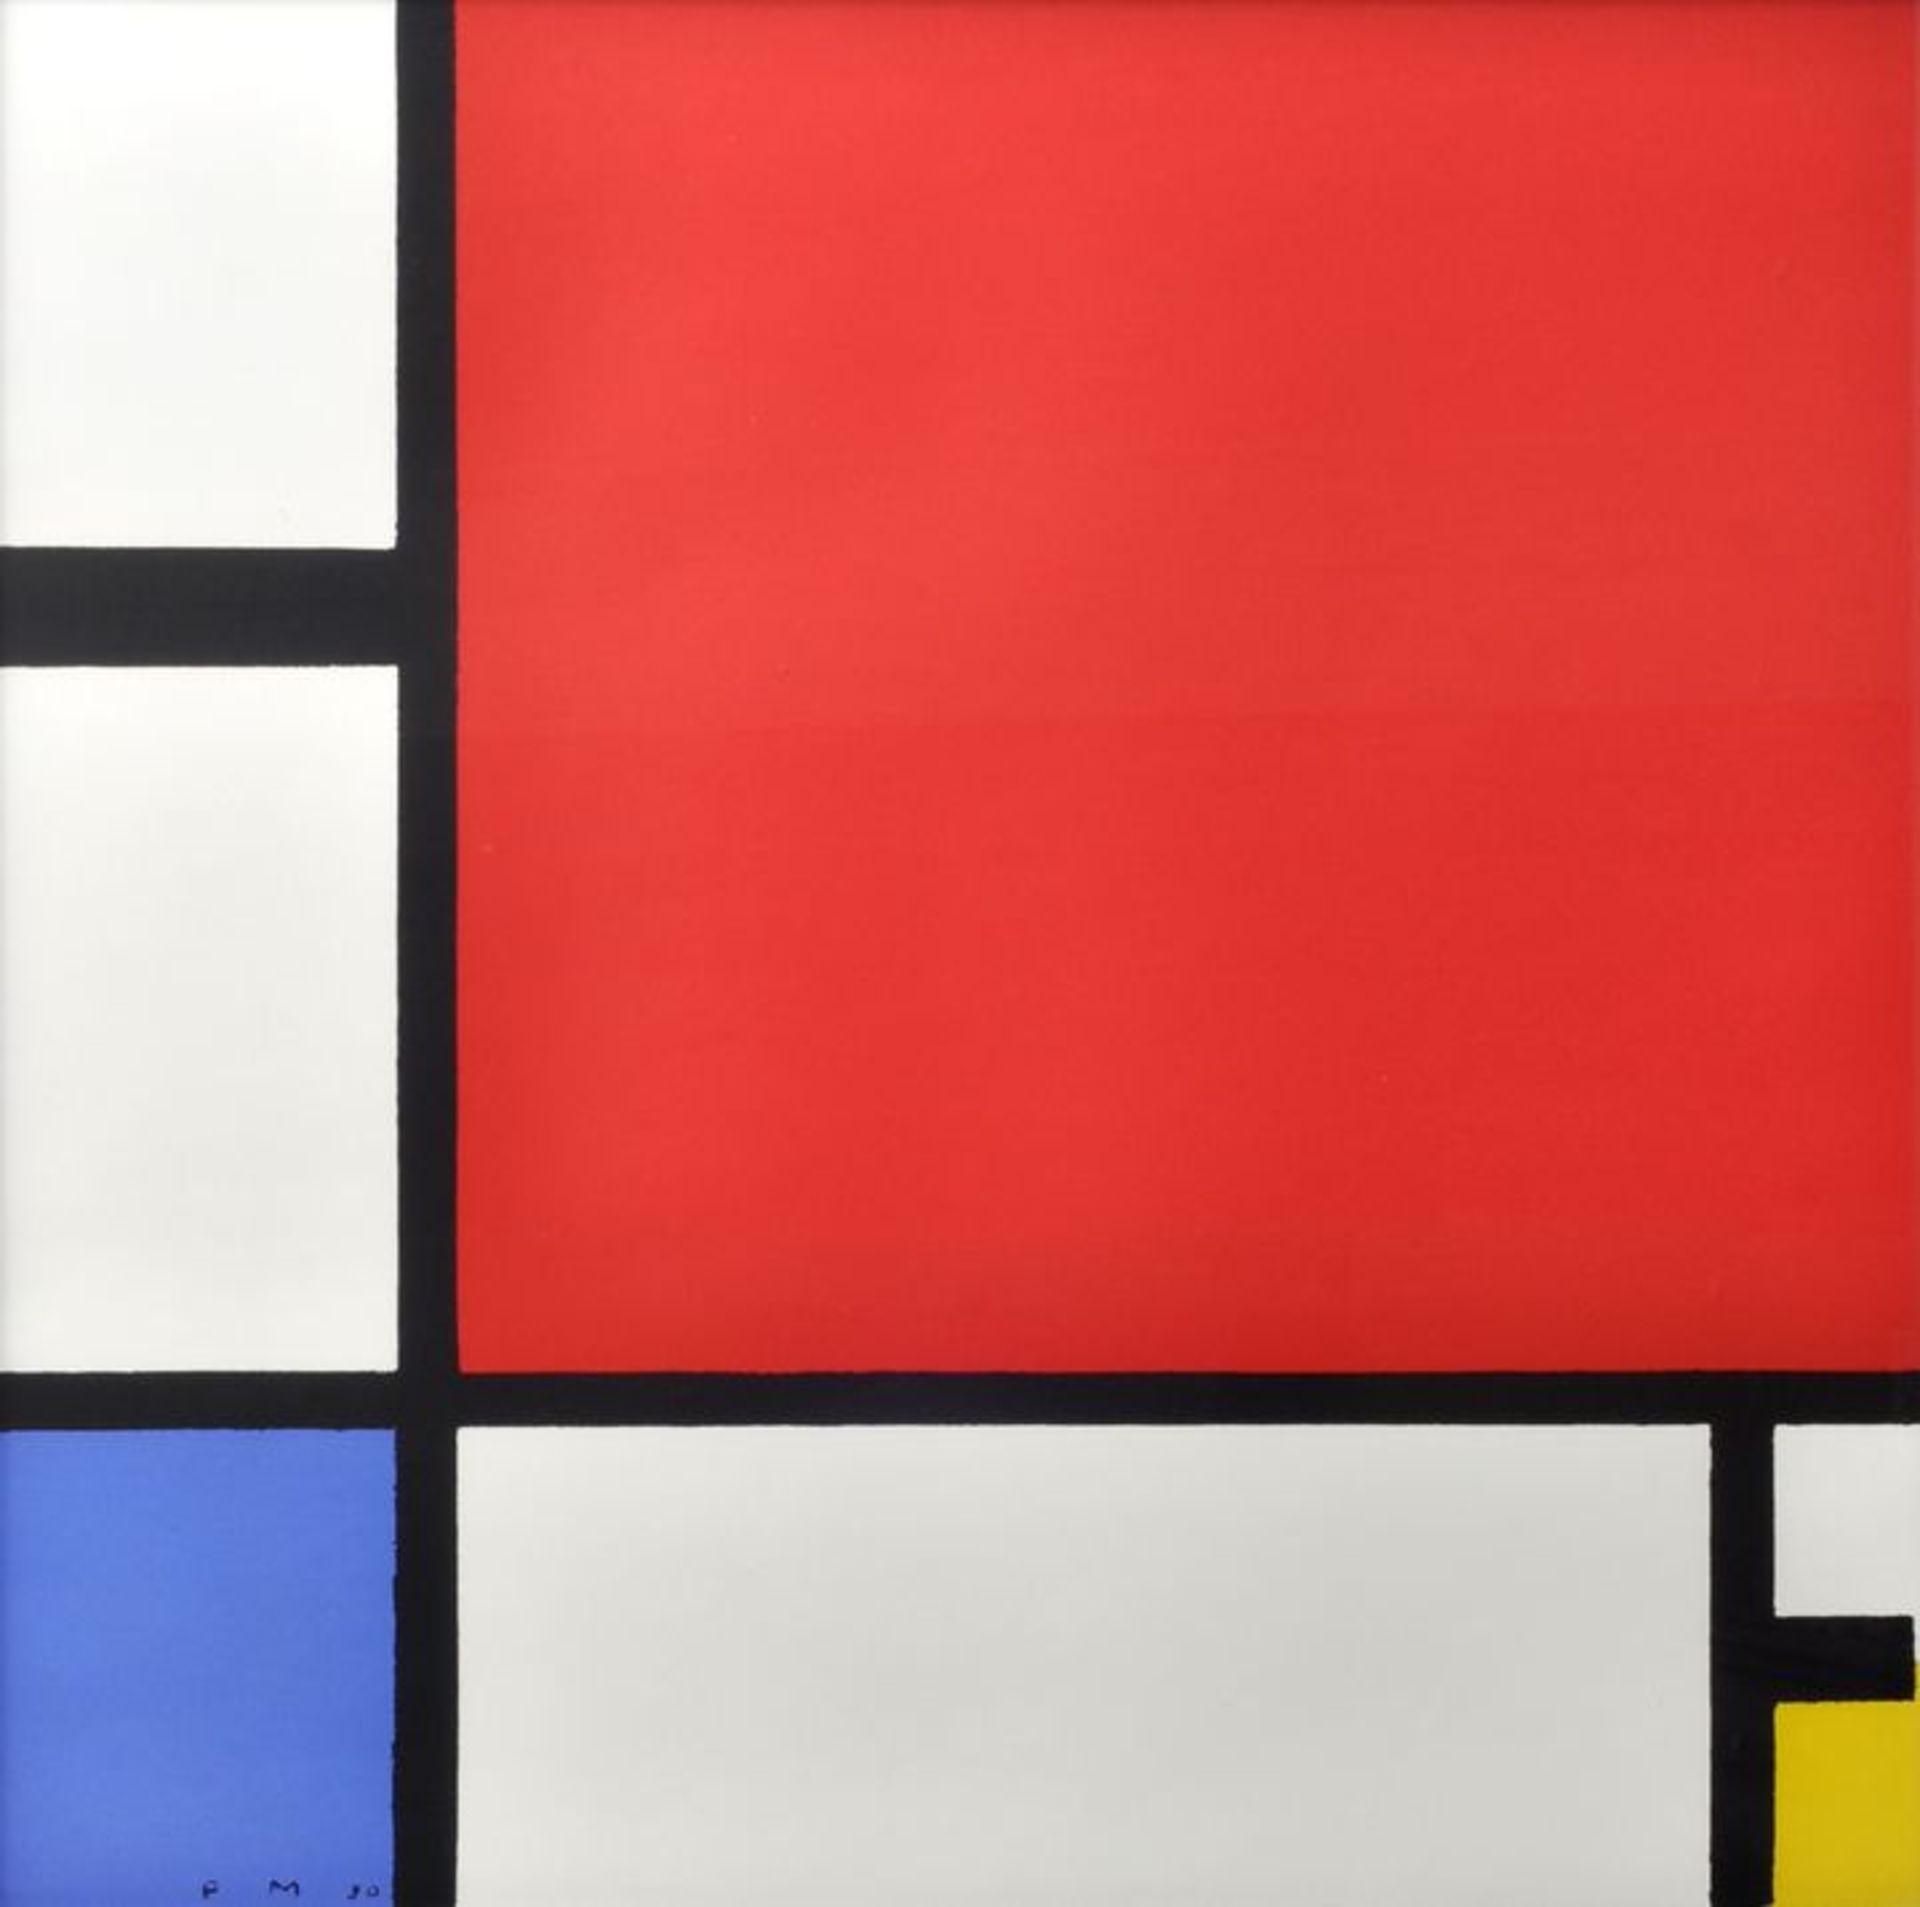 Mondrian, Piet1872 - 1944 Komposition in Rot, Blau und Gelb. Zeitgenössischer Siebdruck nach dem